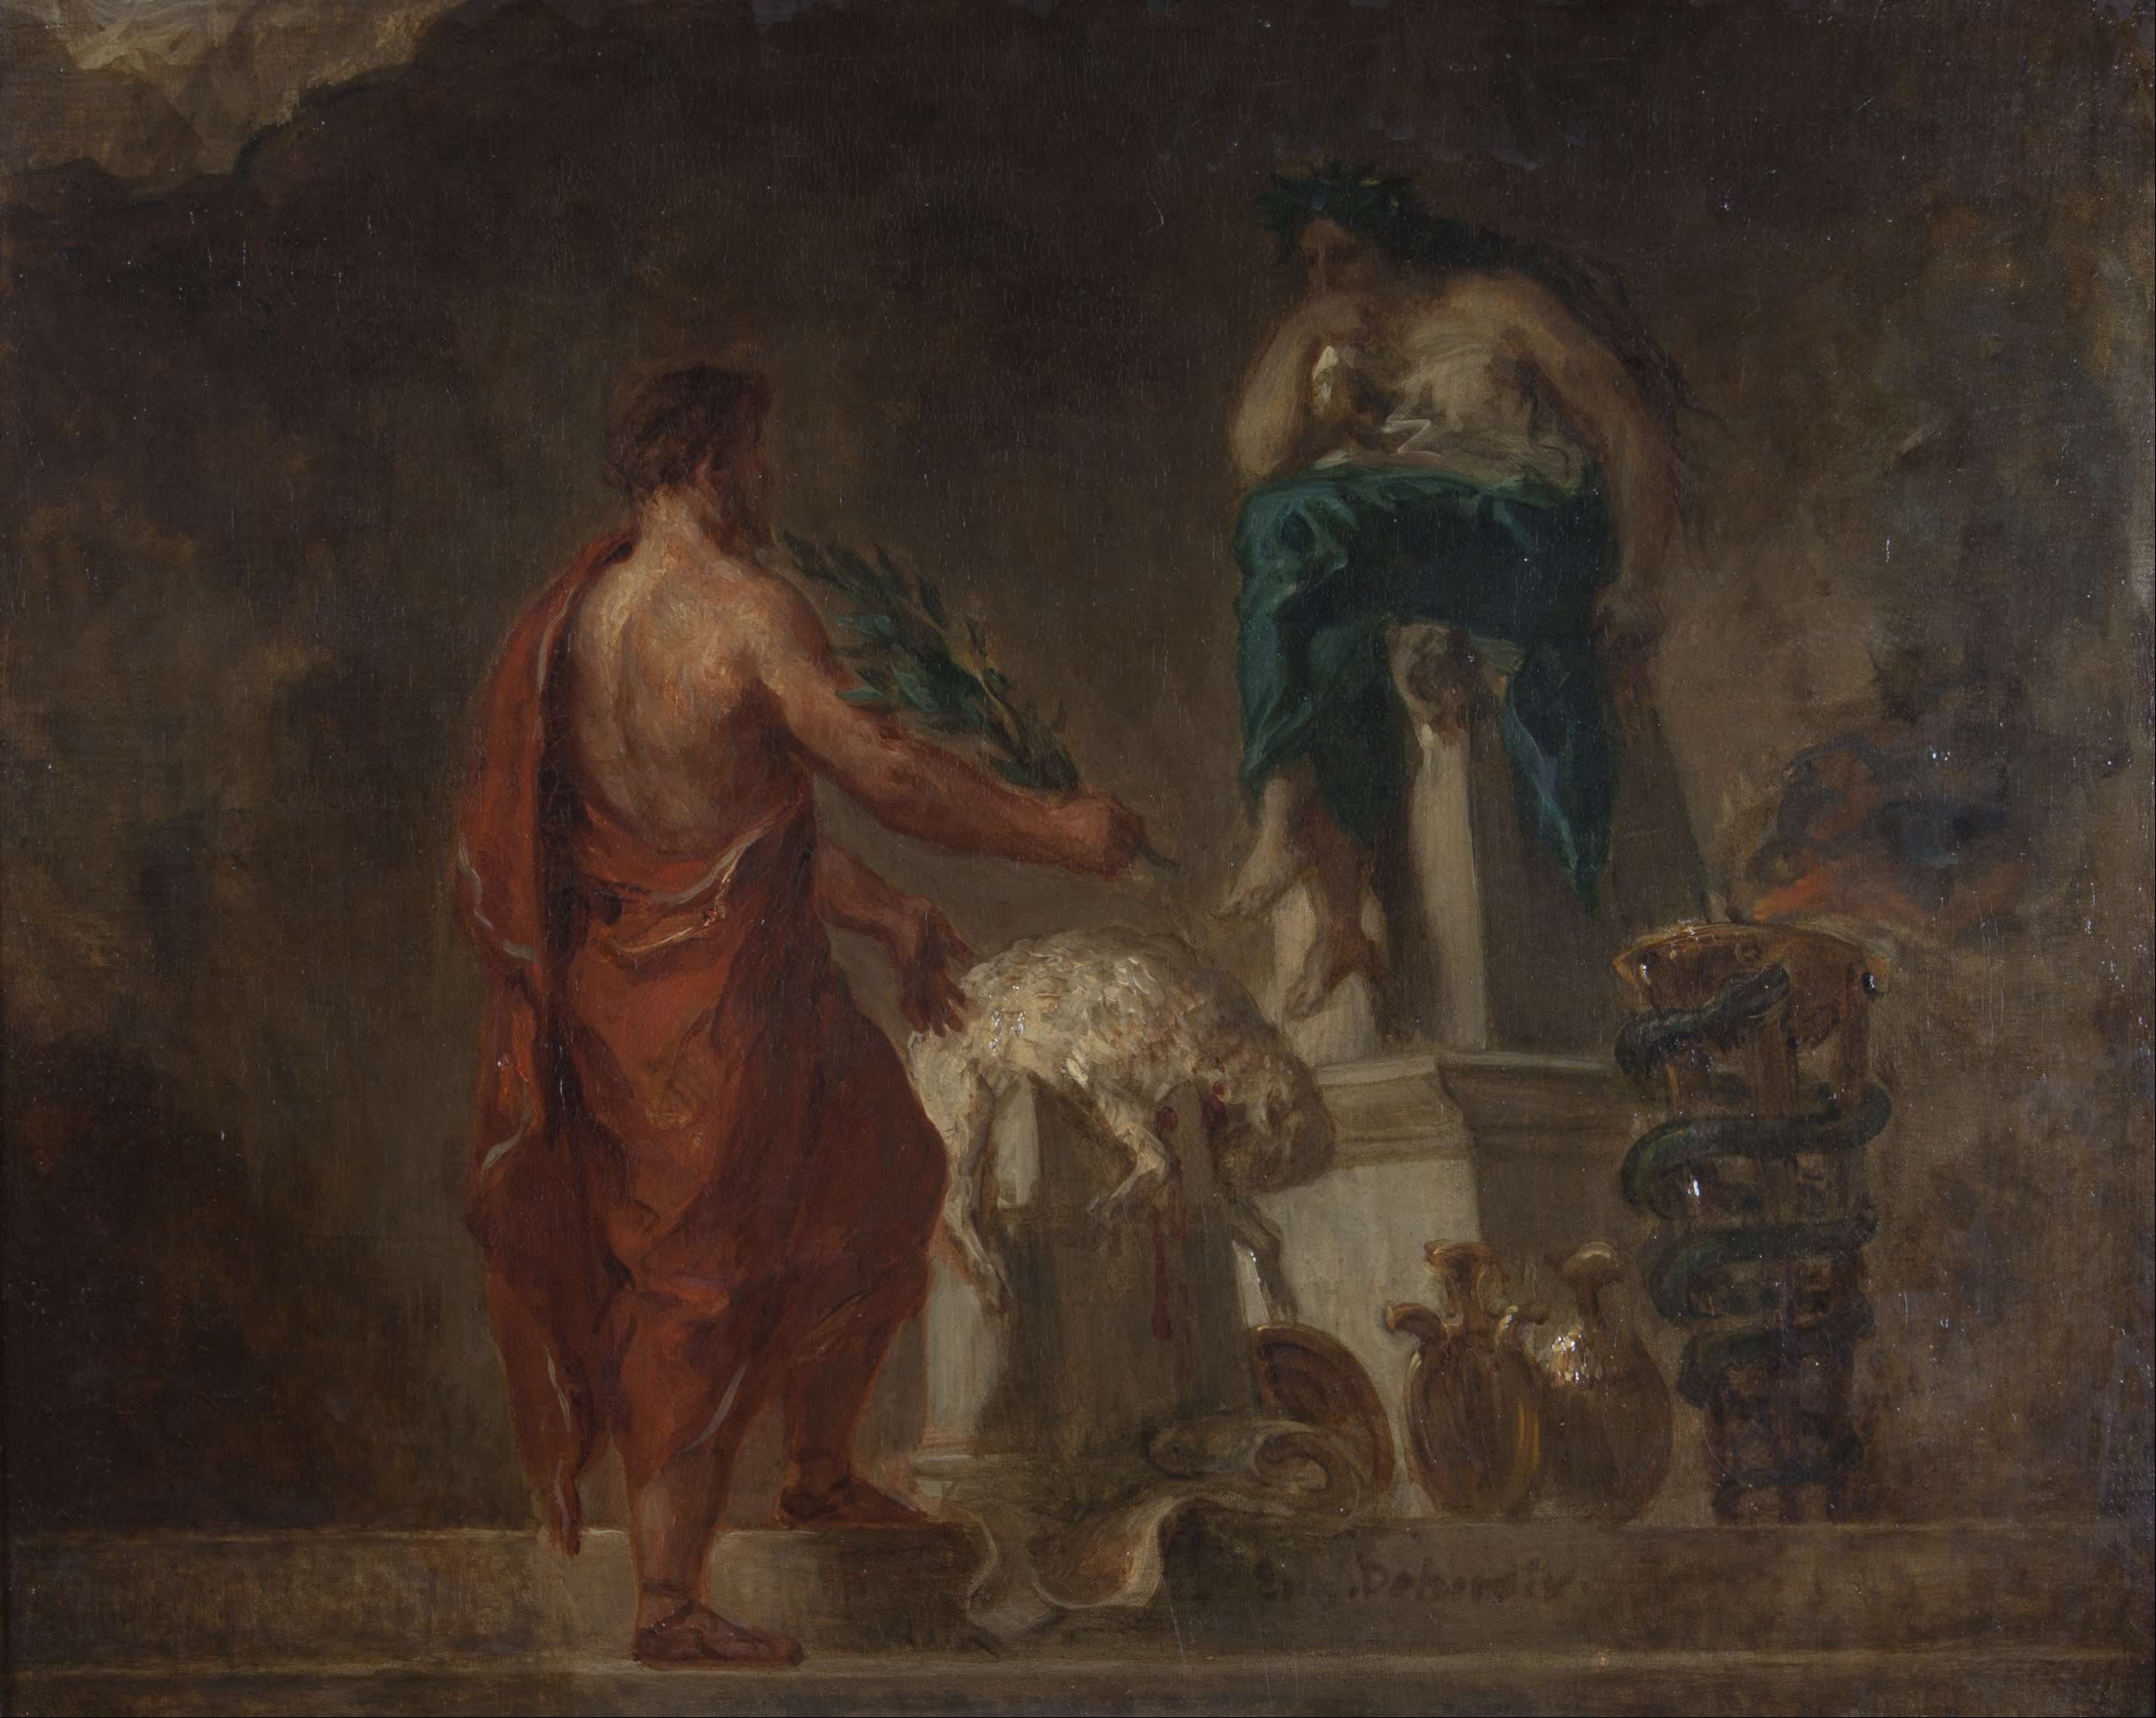 Ο Σπαρτιάτης νομοθέτης Λυκούργος ζητάει χρησμό από την Πυθία. Lycurgus Consulting the Pythia (1835/1845), as imagined by Eugène Delacroix.